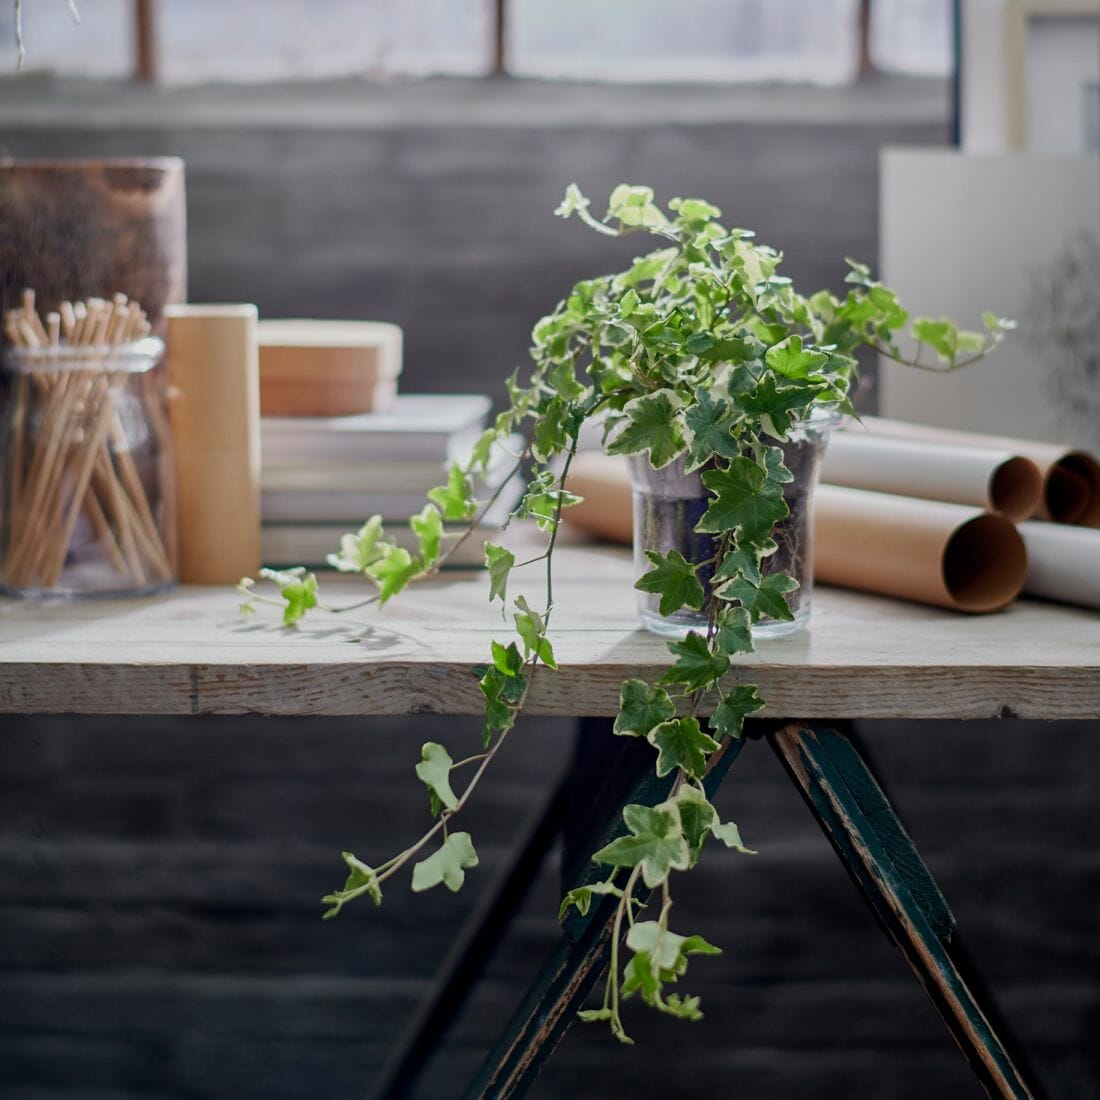 Đặt một chậu cây trên bàn làm việc để thanh lọc không khí, mang lại không gian xanh và tạo cảm hứng làm việc cho gia chủ.